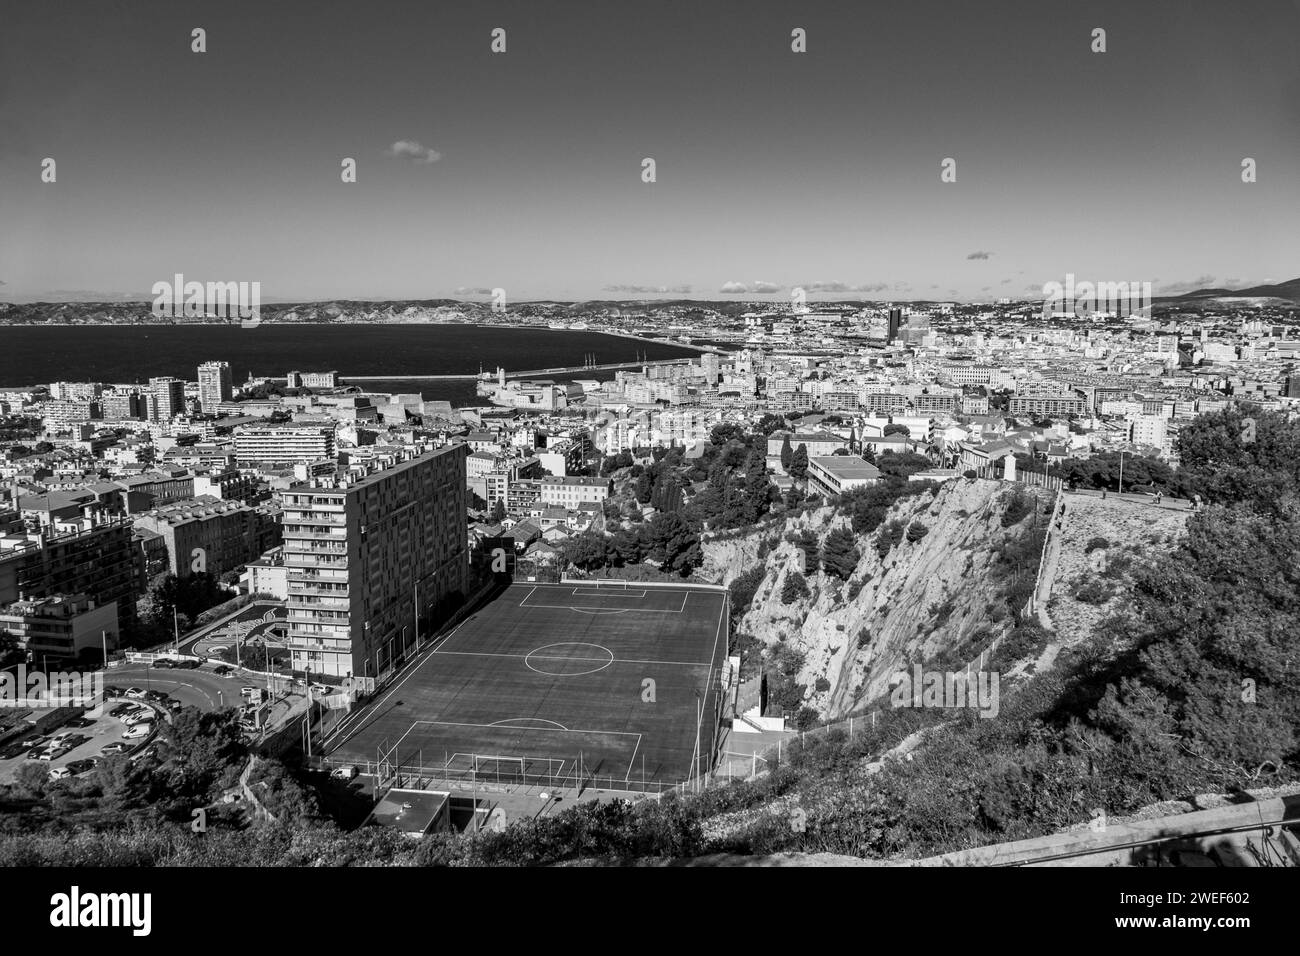 Une photo monochrome aérienne avec un terrain de football contre un paysage urbain animé Banque D'Images